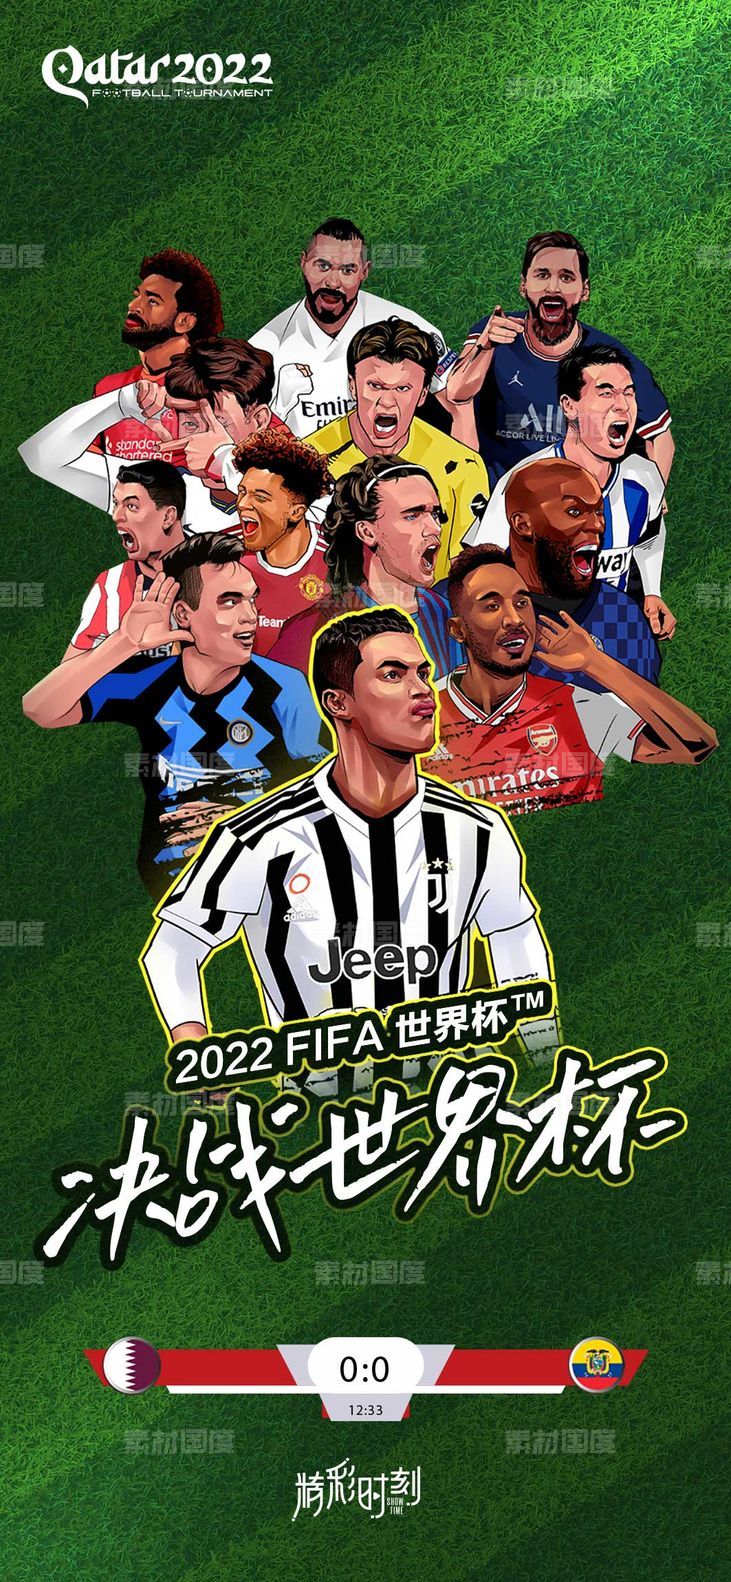 2022世界杯海报 卡塔尔 足球 FAIFA 高端 大气